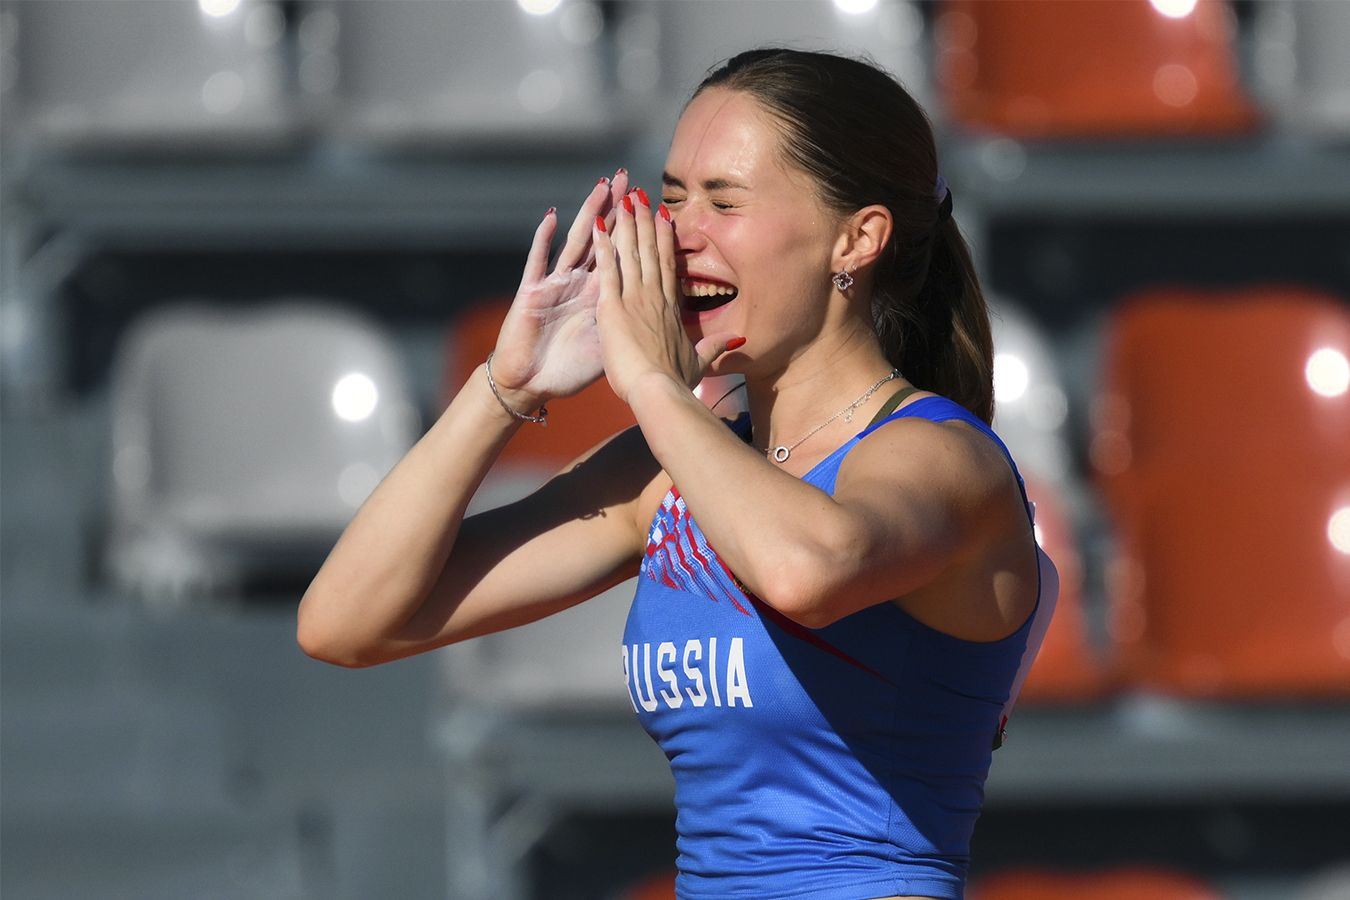 Российская прыгунья превзошла чемпионку Европы на Играх БРИКС. Как это произошло?